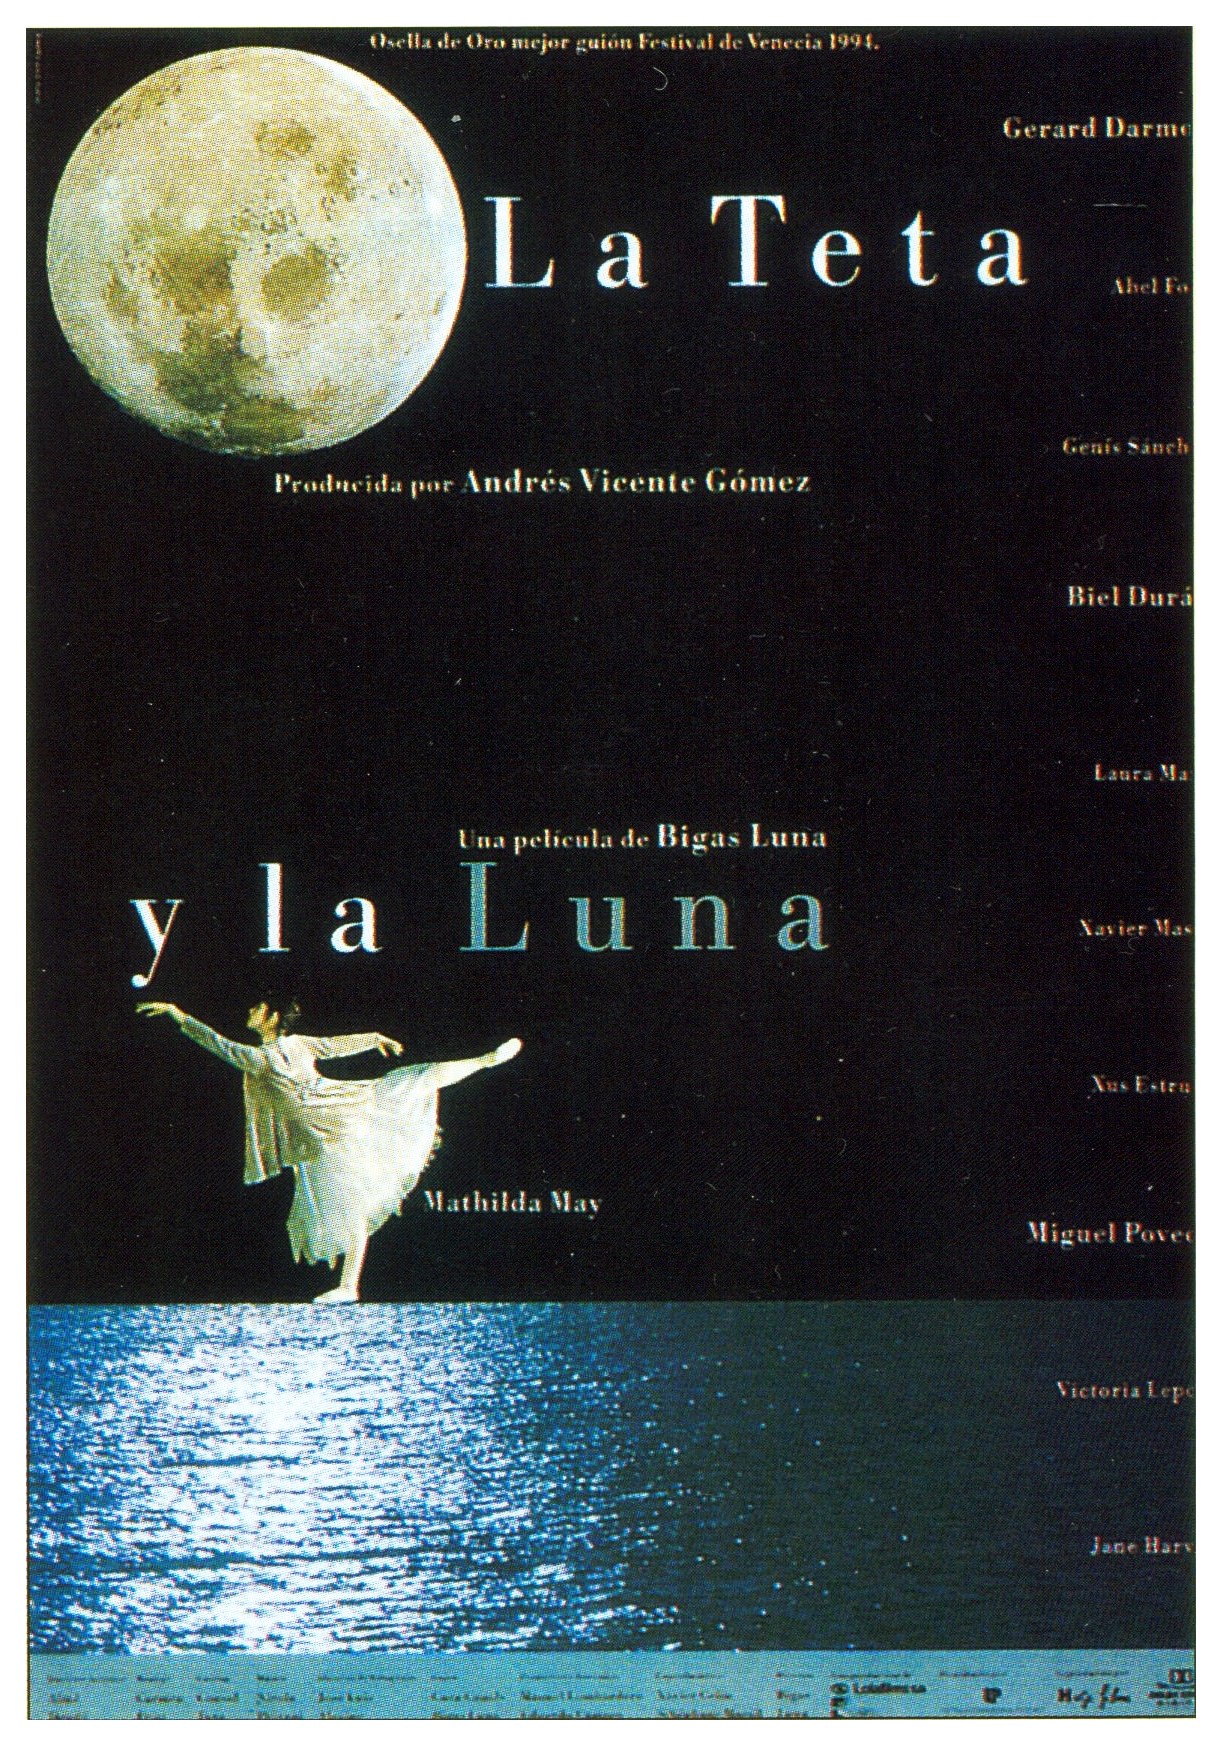  فیلم سینمایی La teta y la luna با حضور Mathilda May